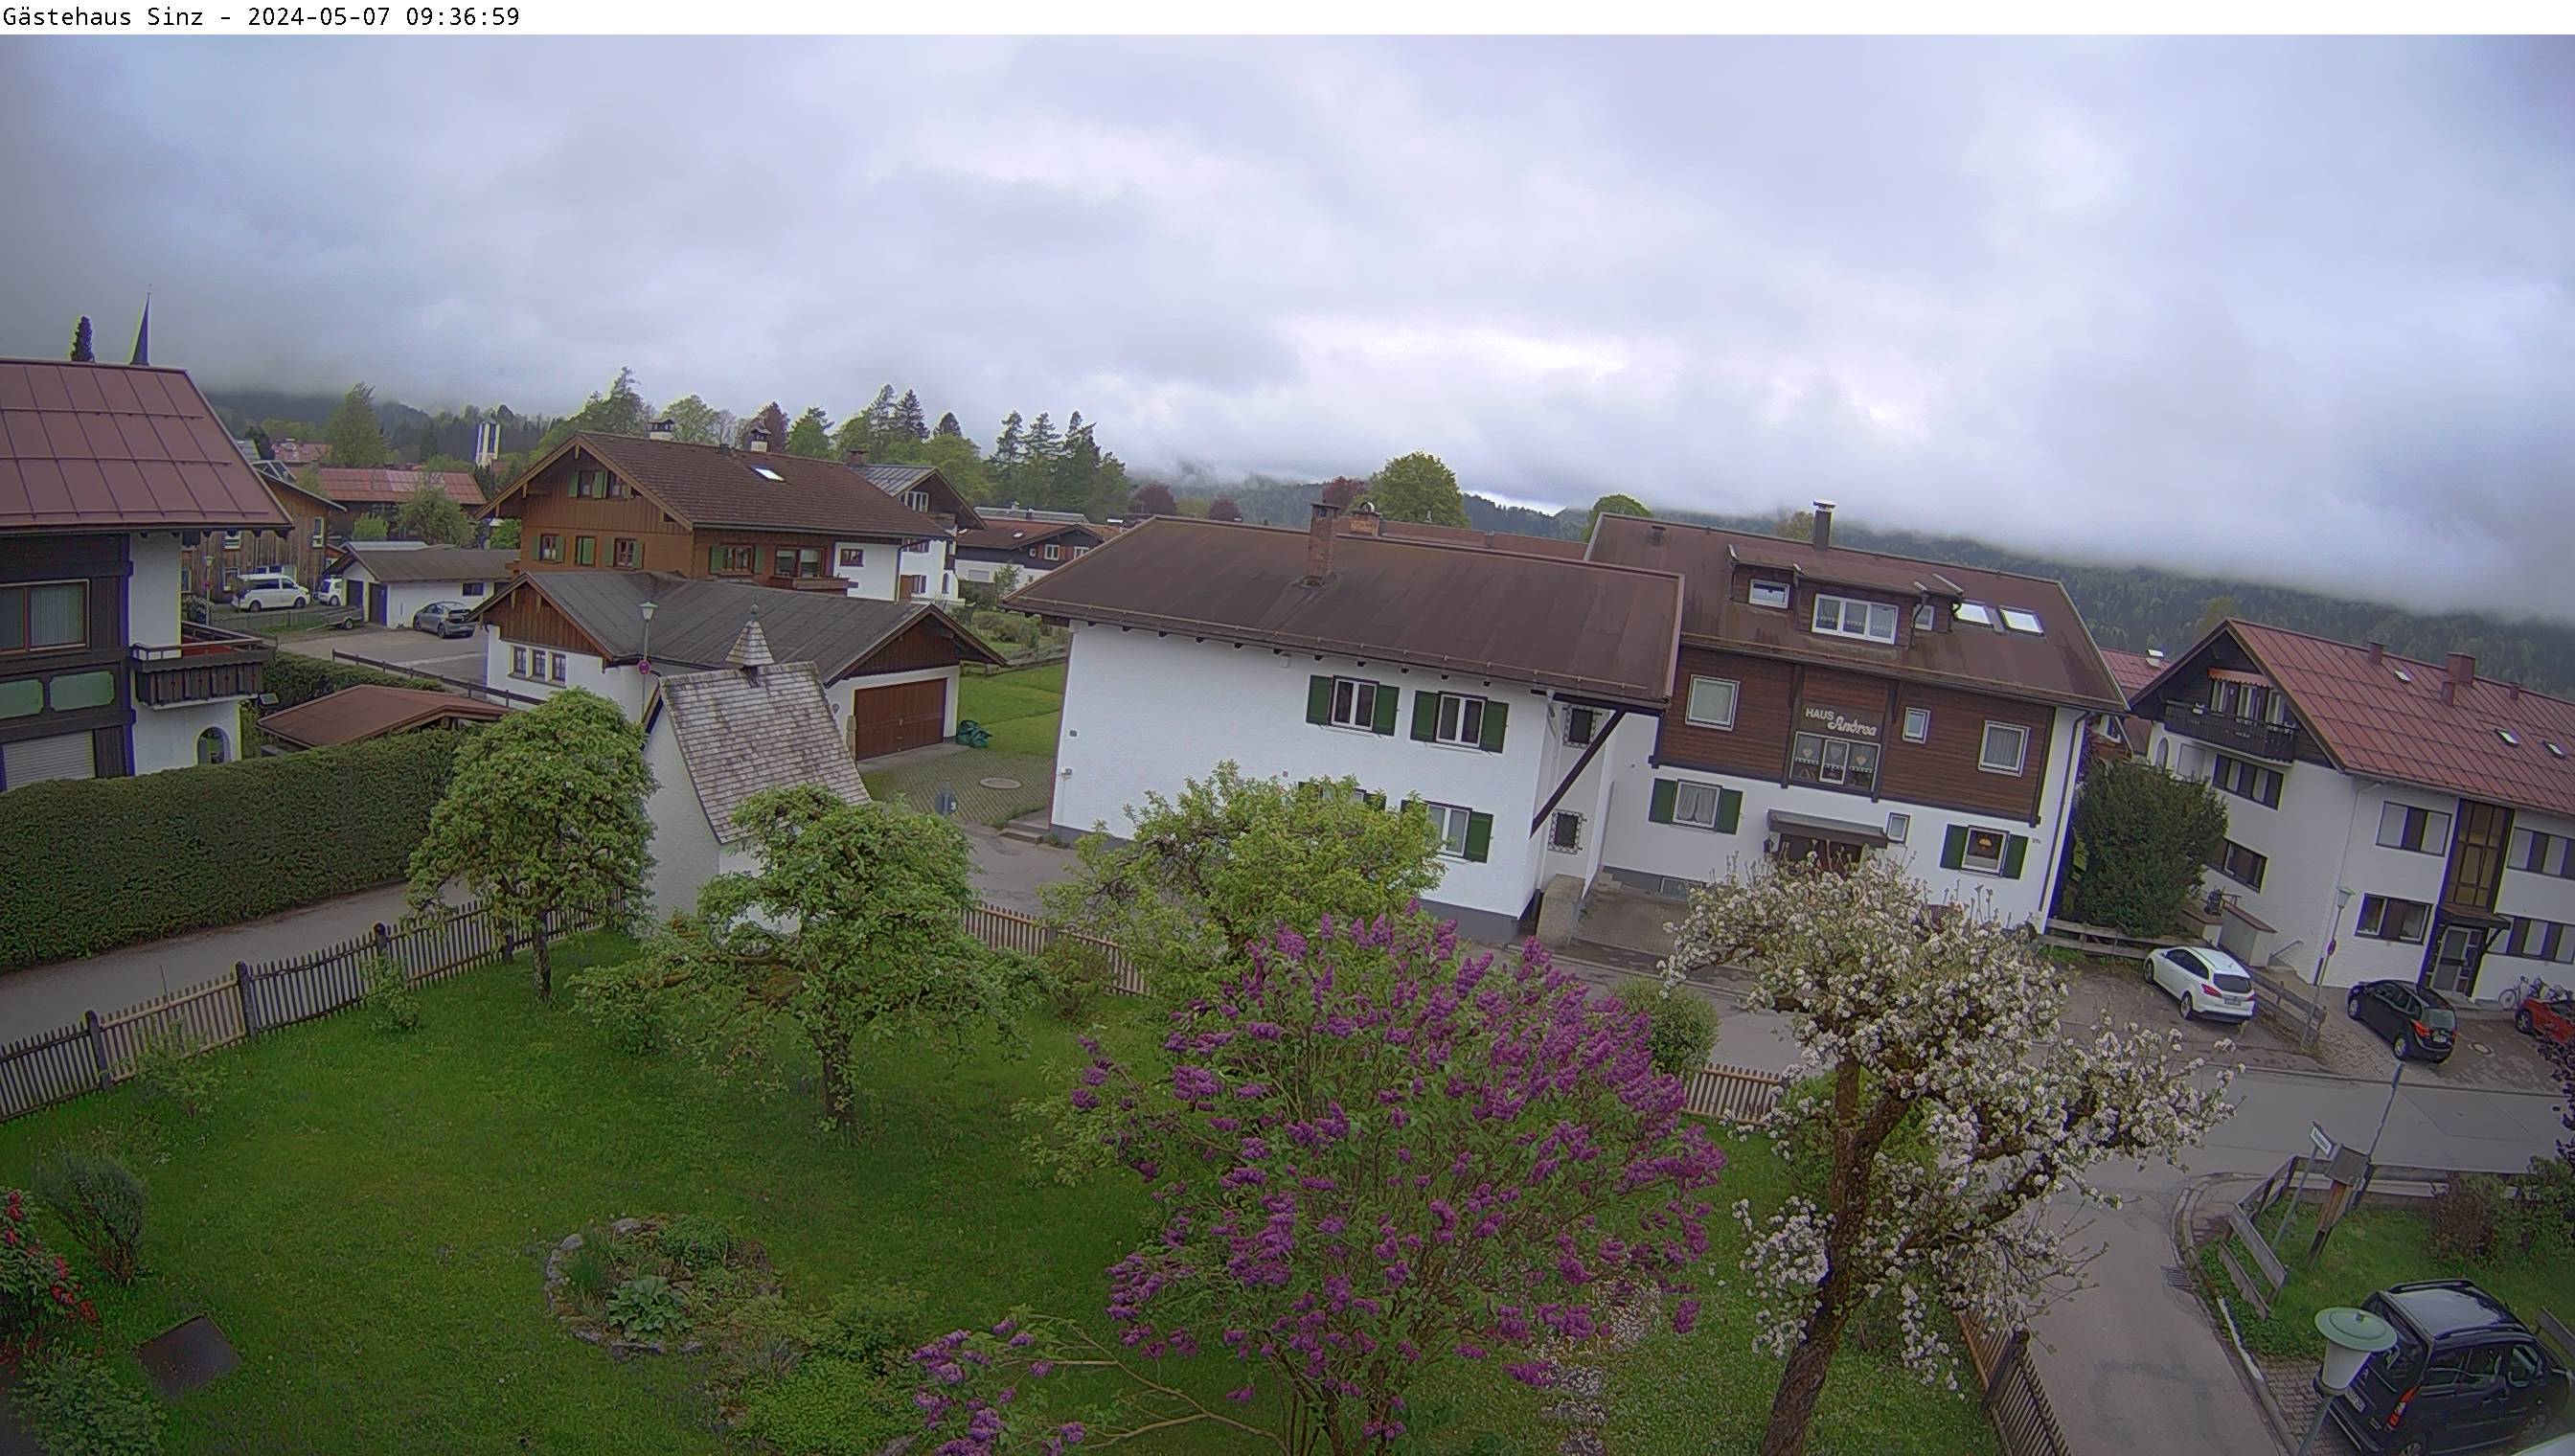 Webcam Gästehaus Sinz